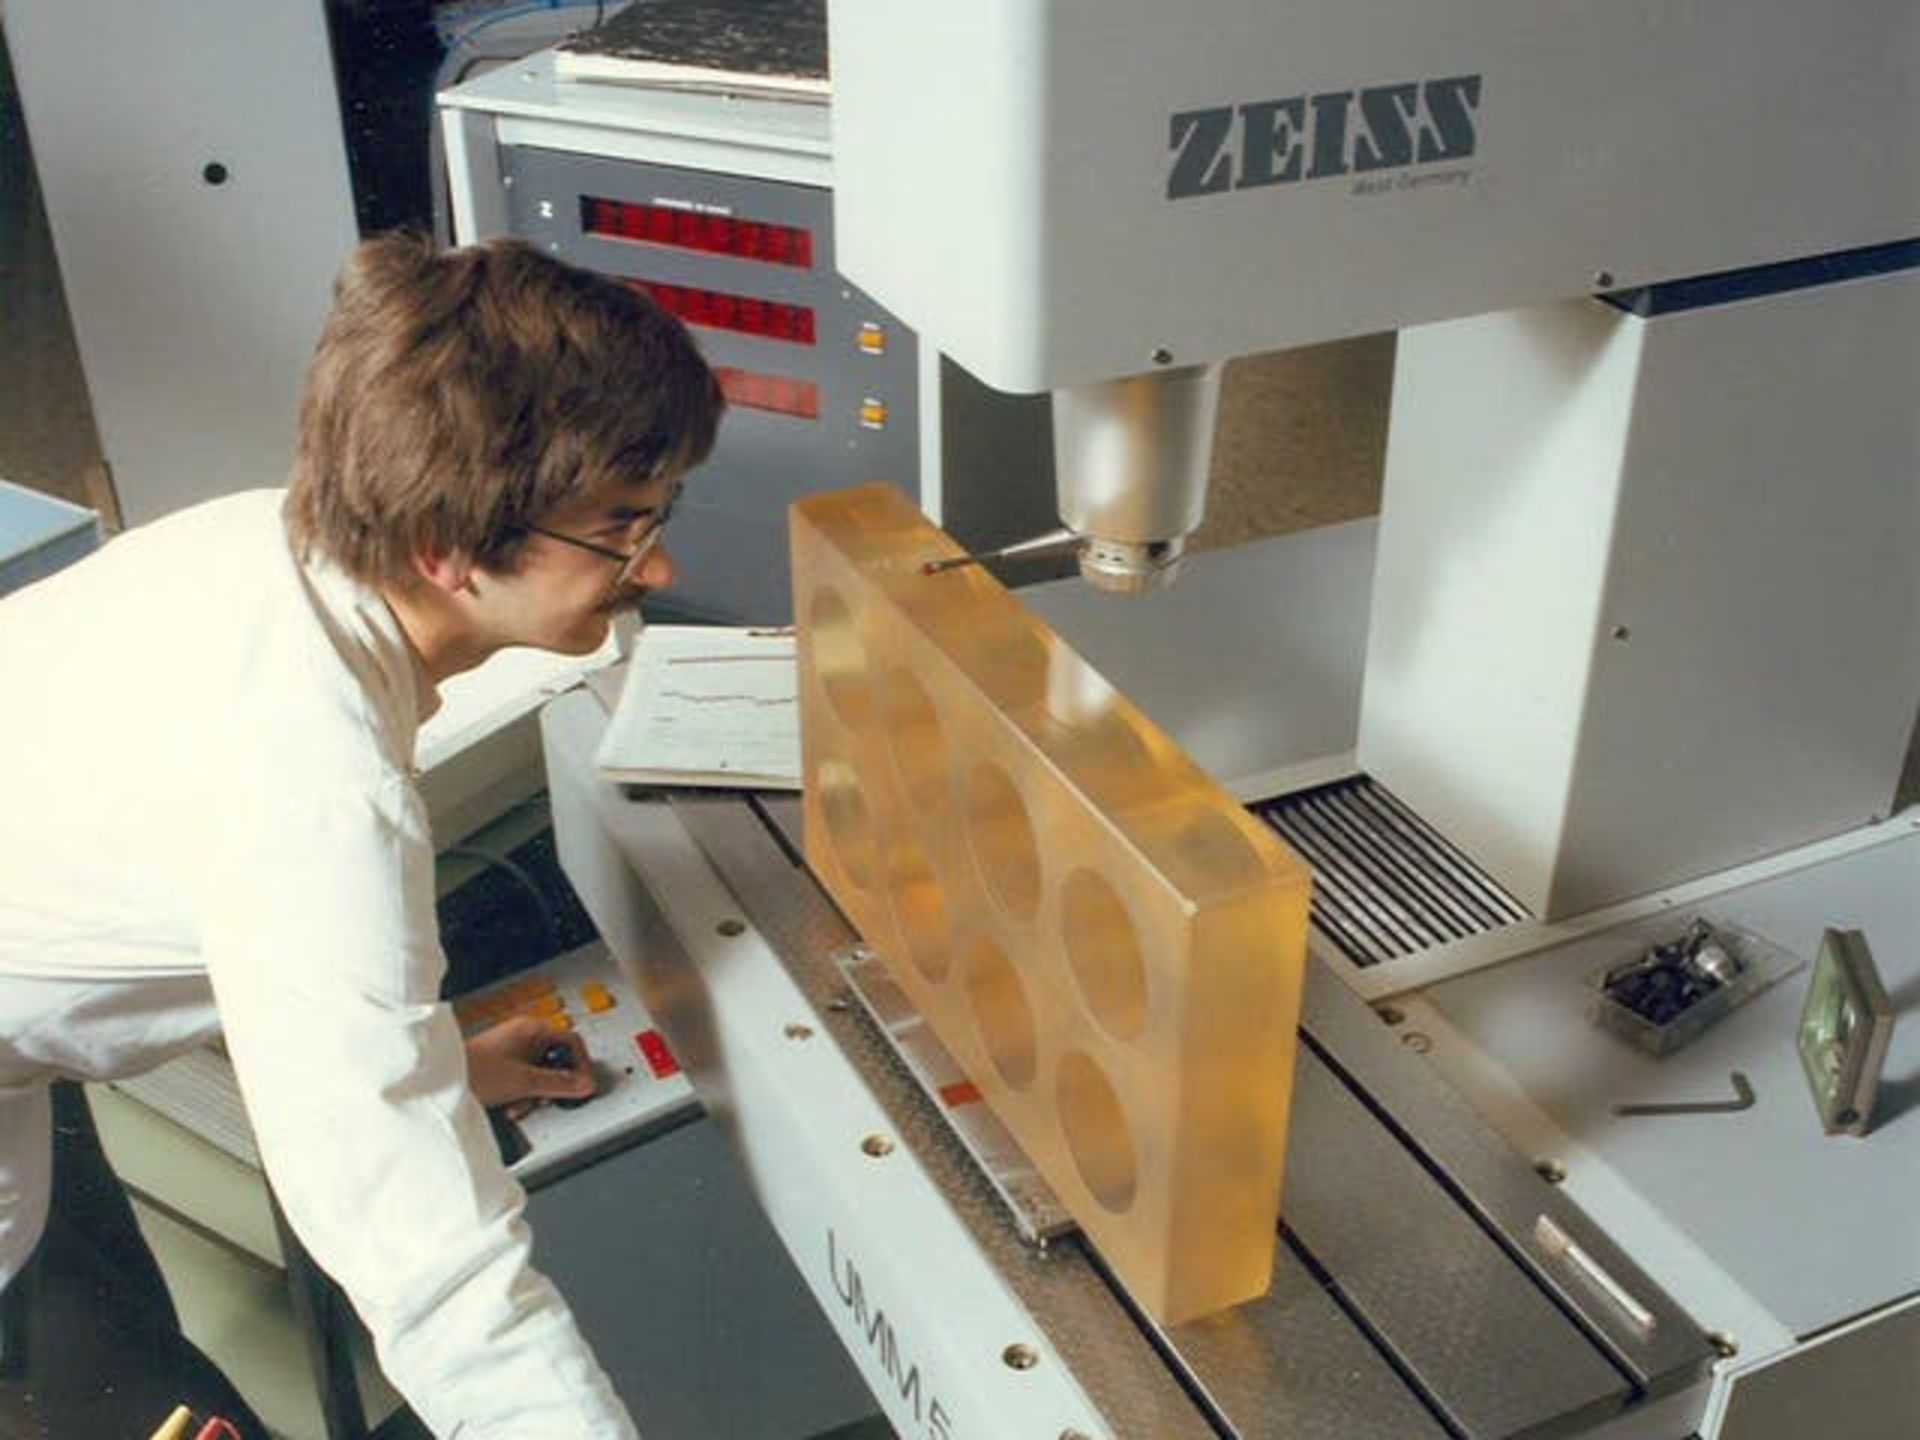 سیستم اندازه گیری کارل زایس / Carl Zeiss